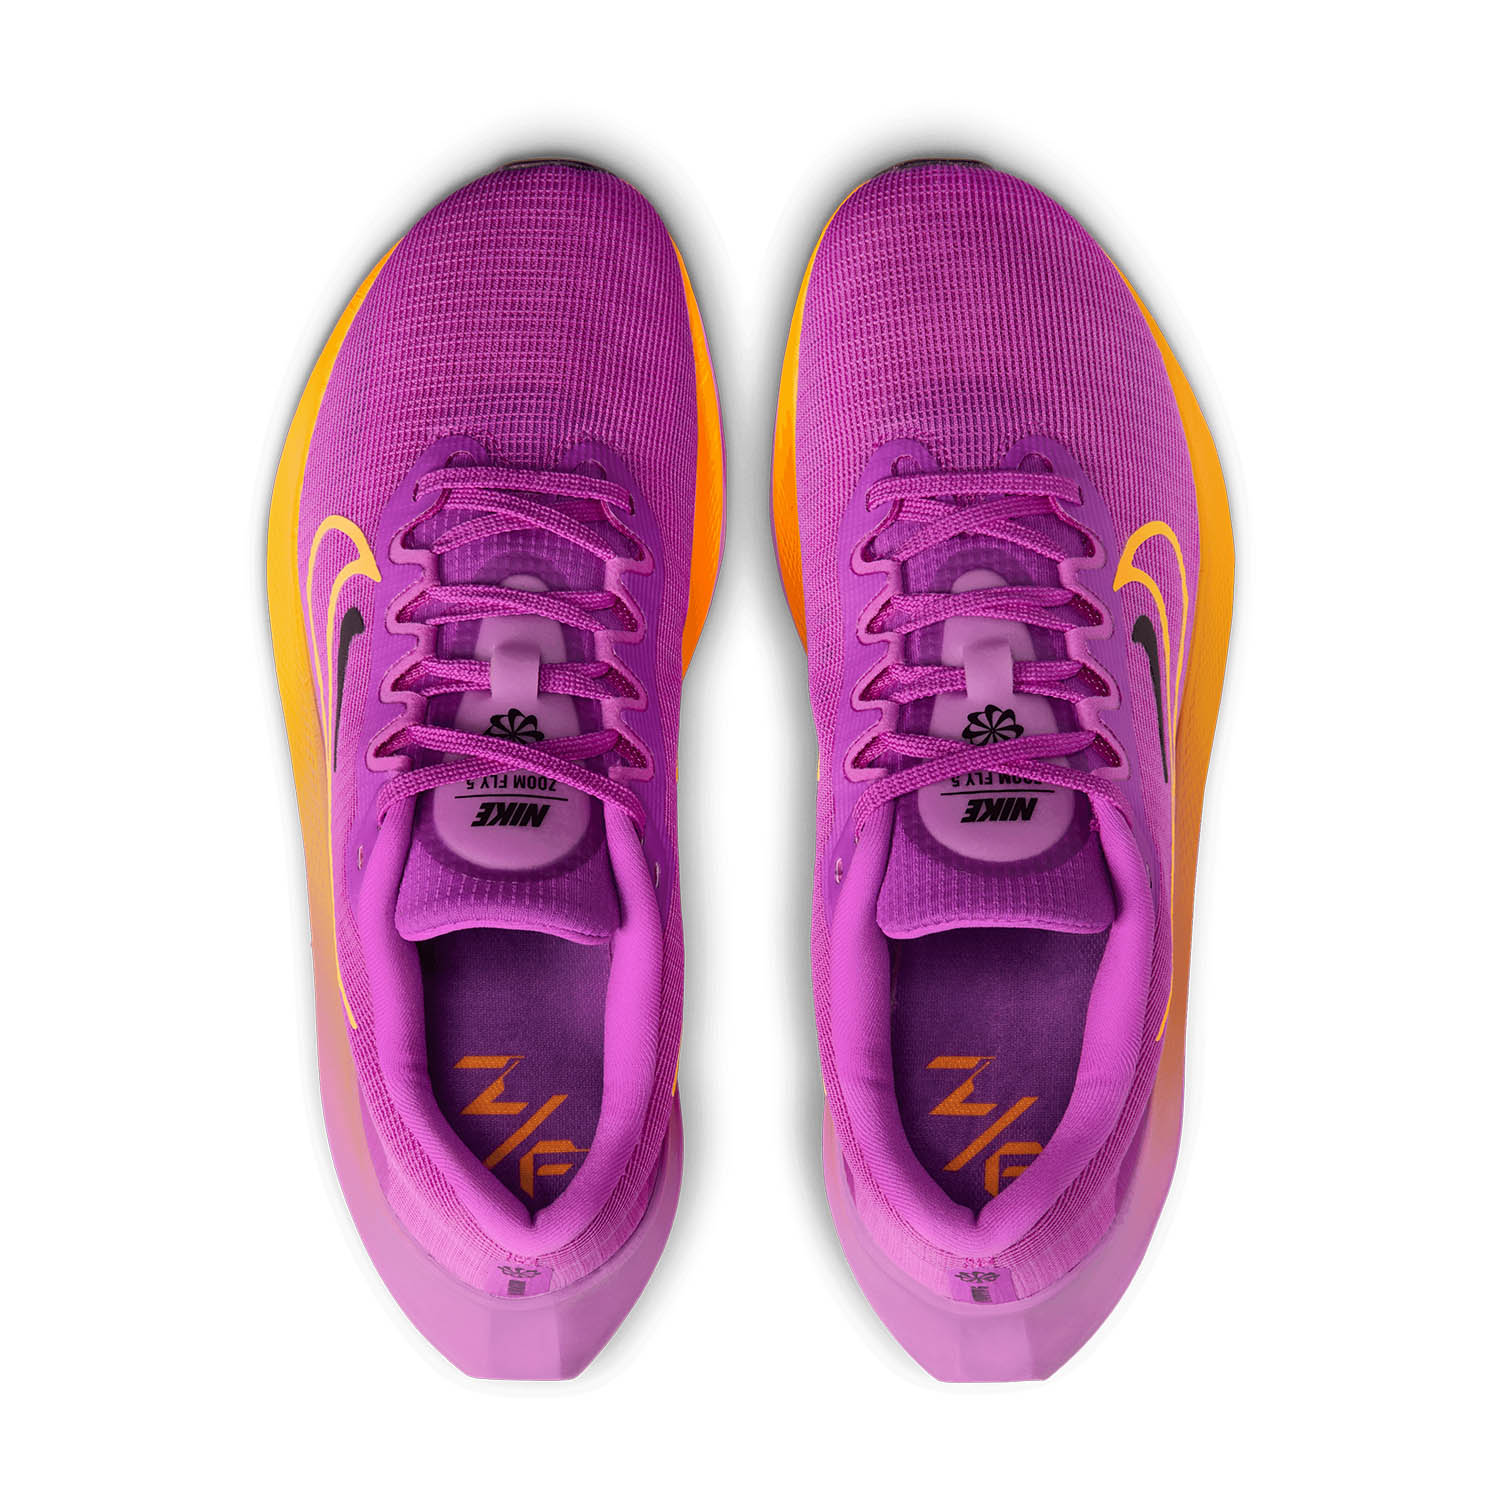 Nike Zoom Fly 5 - Hyper Violet/Laser Orange/Black